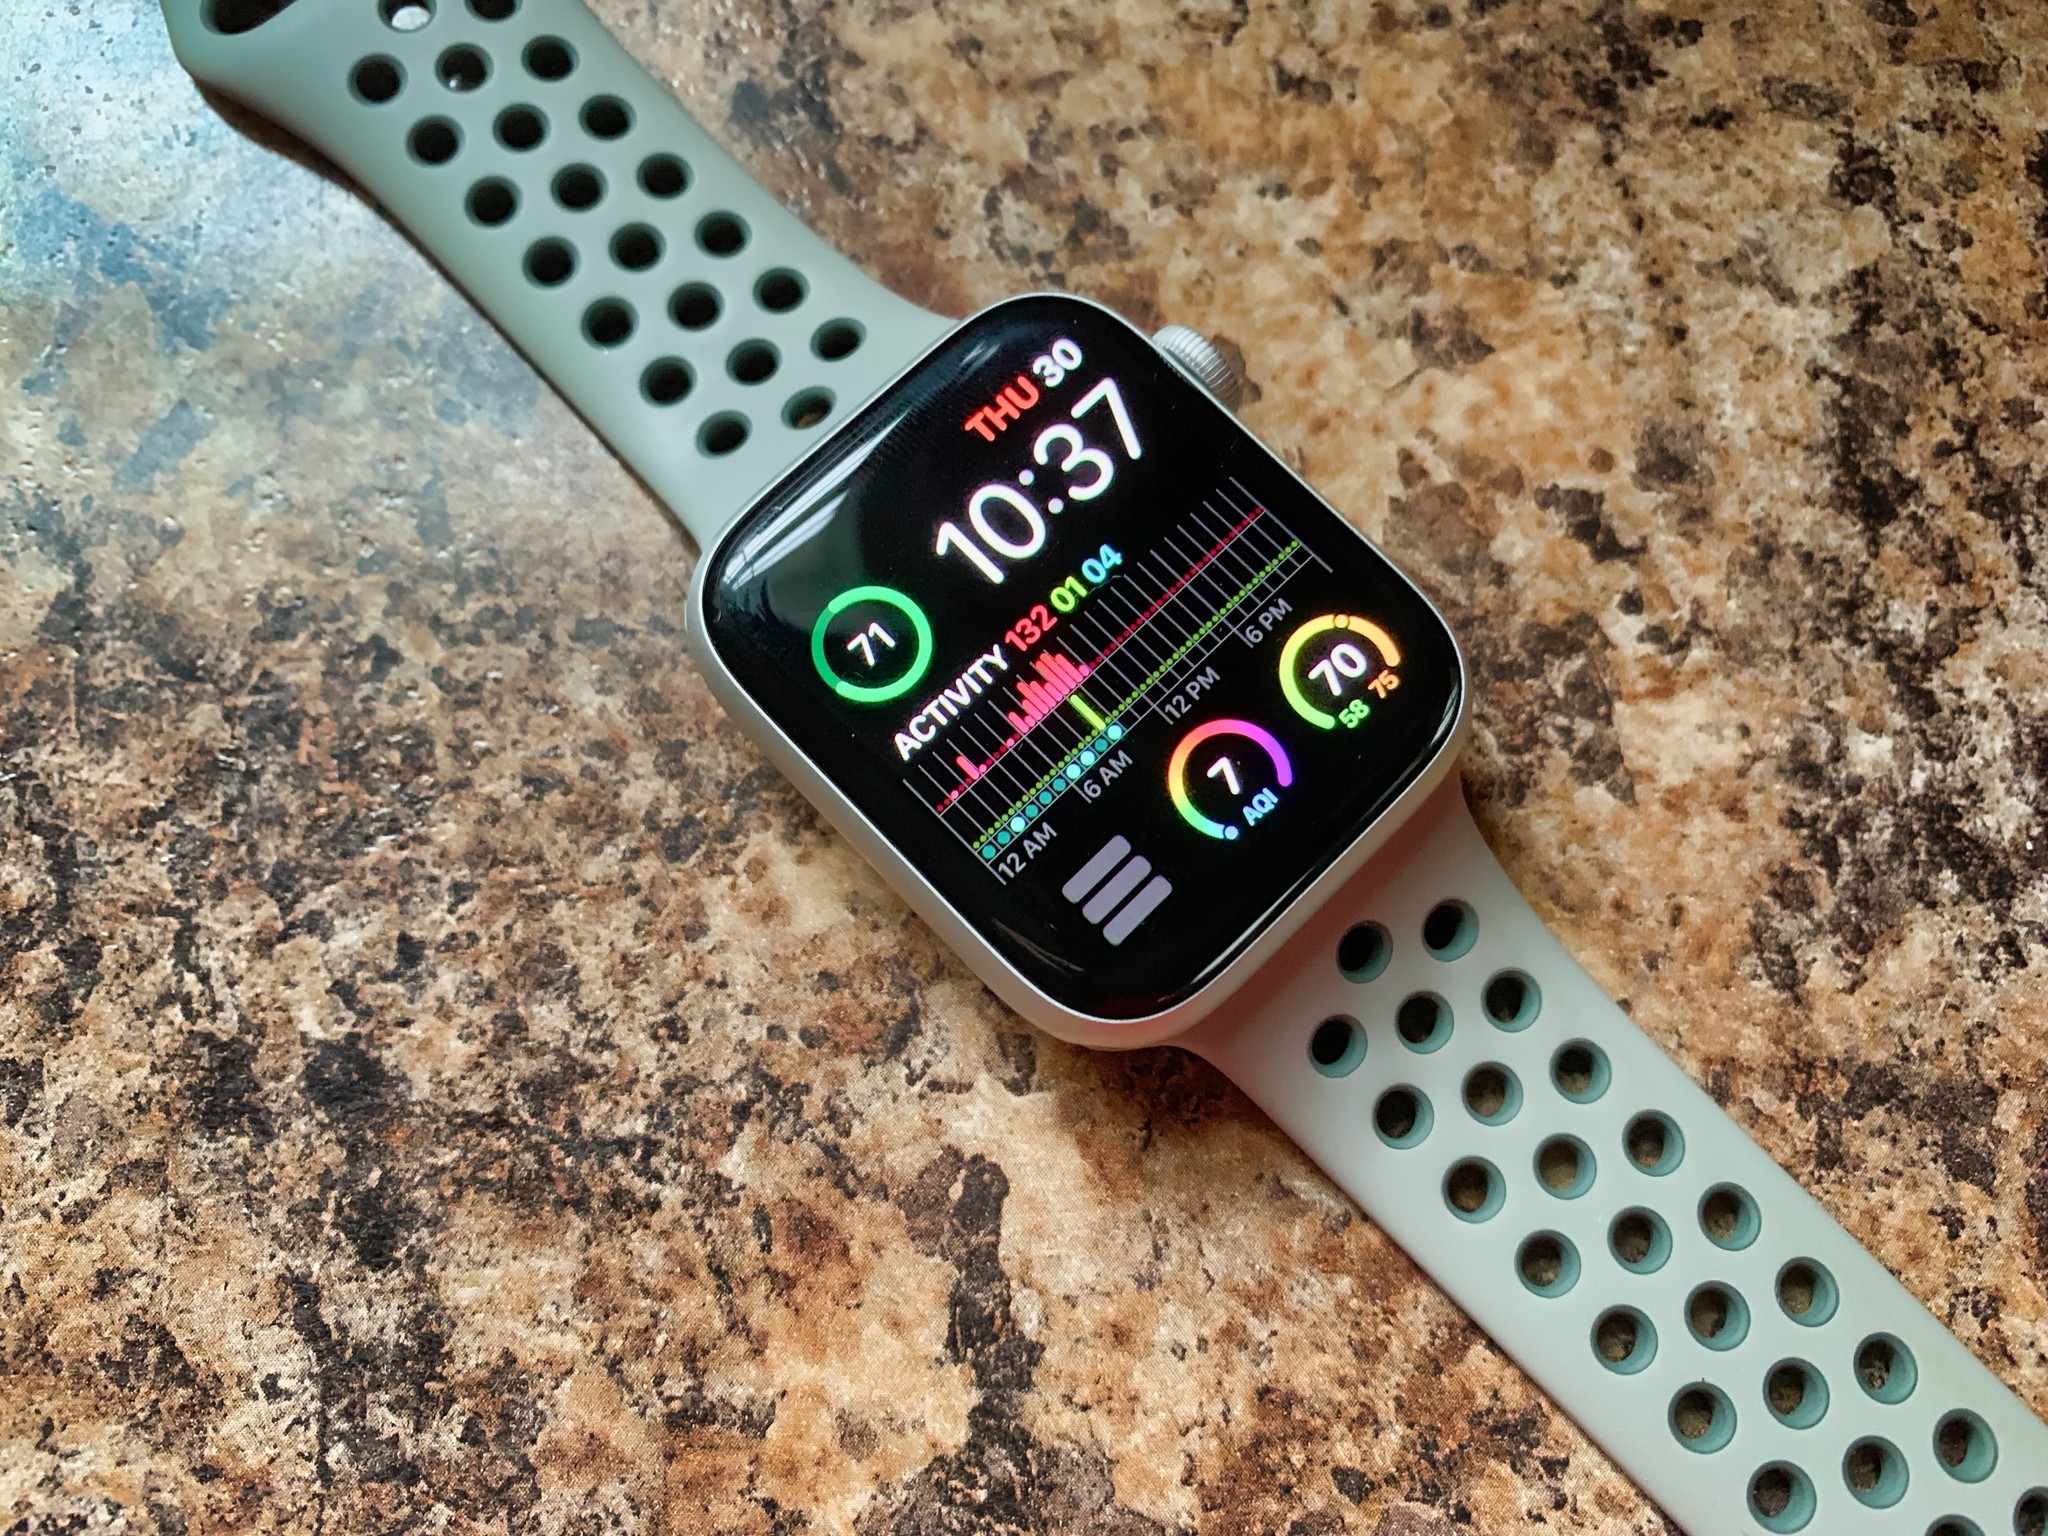 Apple watch подключить к iphone. Картинки на эпл вотч на заставку. Станция для подключения Apple watch к компьютеру купить. Часы эпл к андроиду